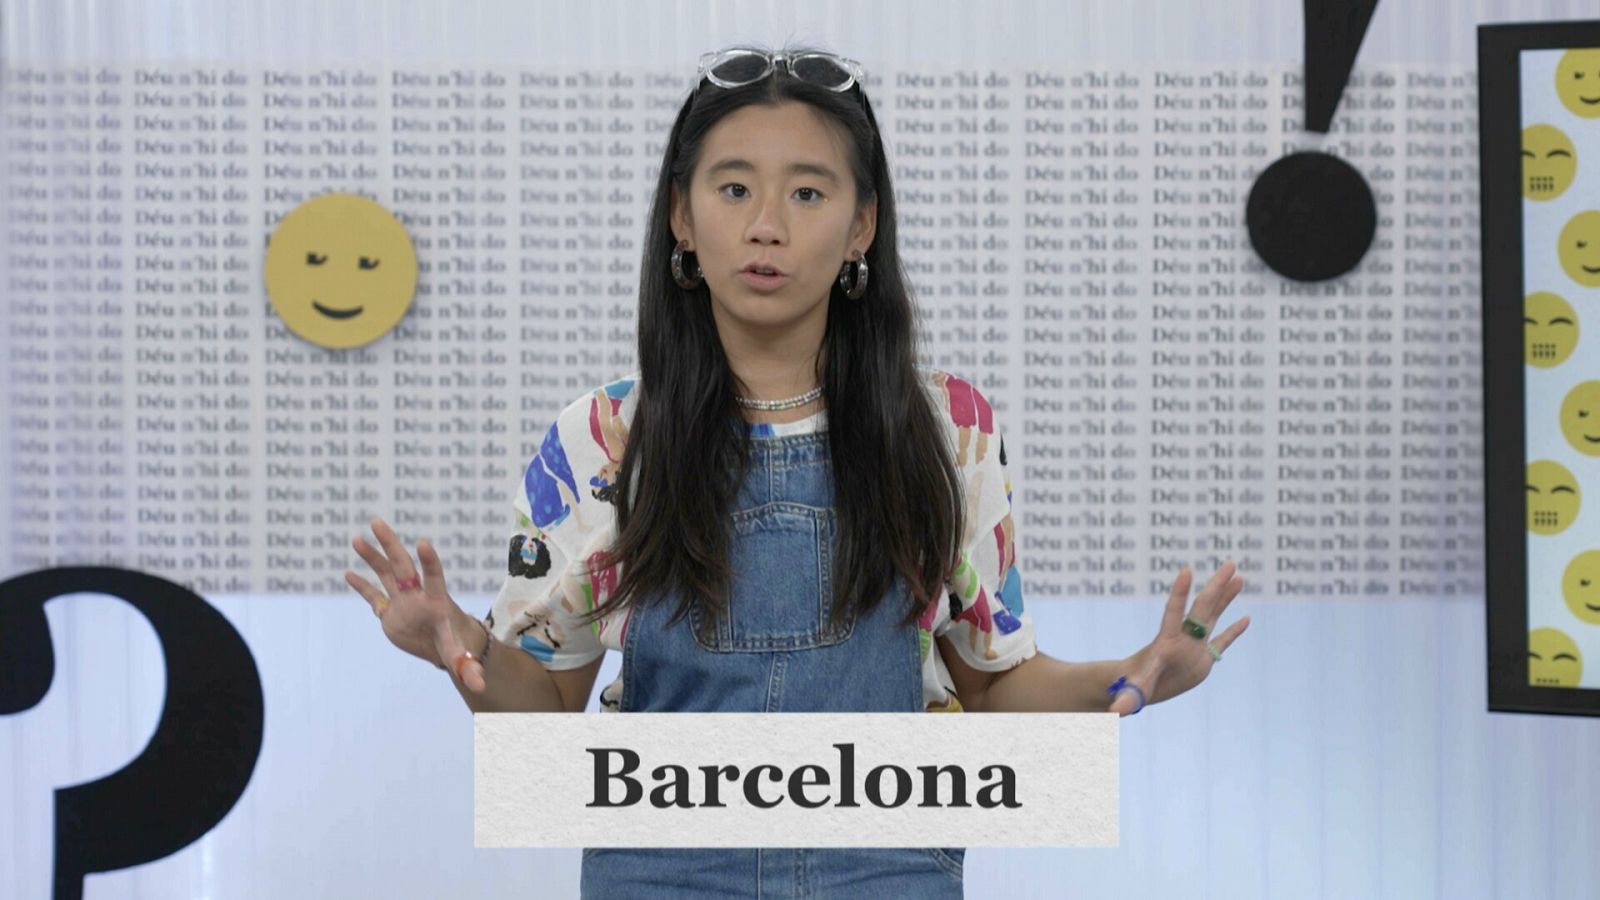 Com s'escriu: Barcelona o La Barcelona?